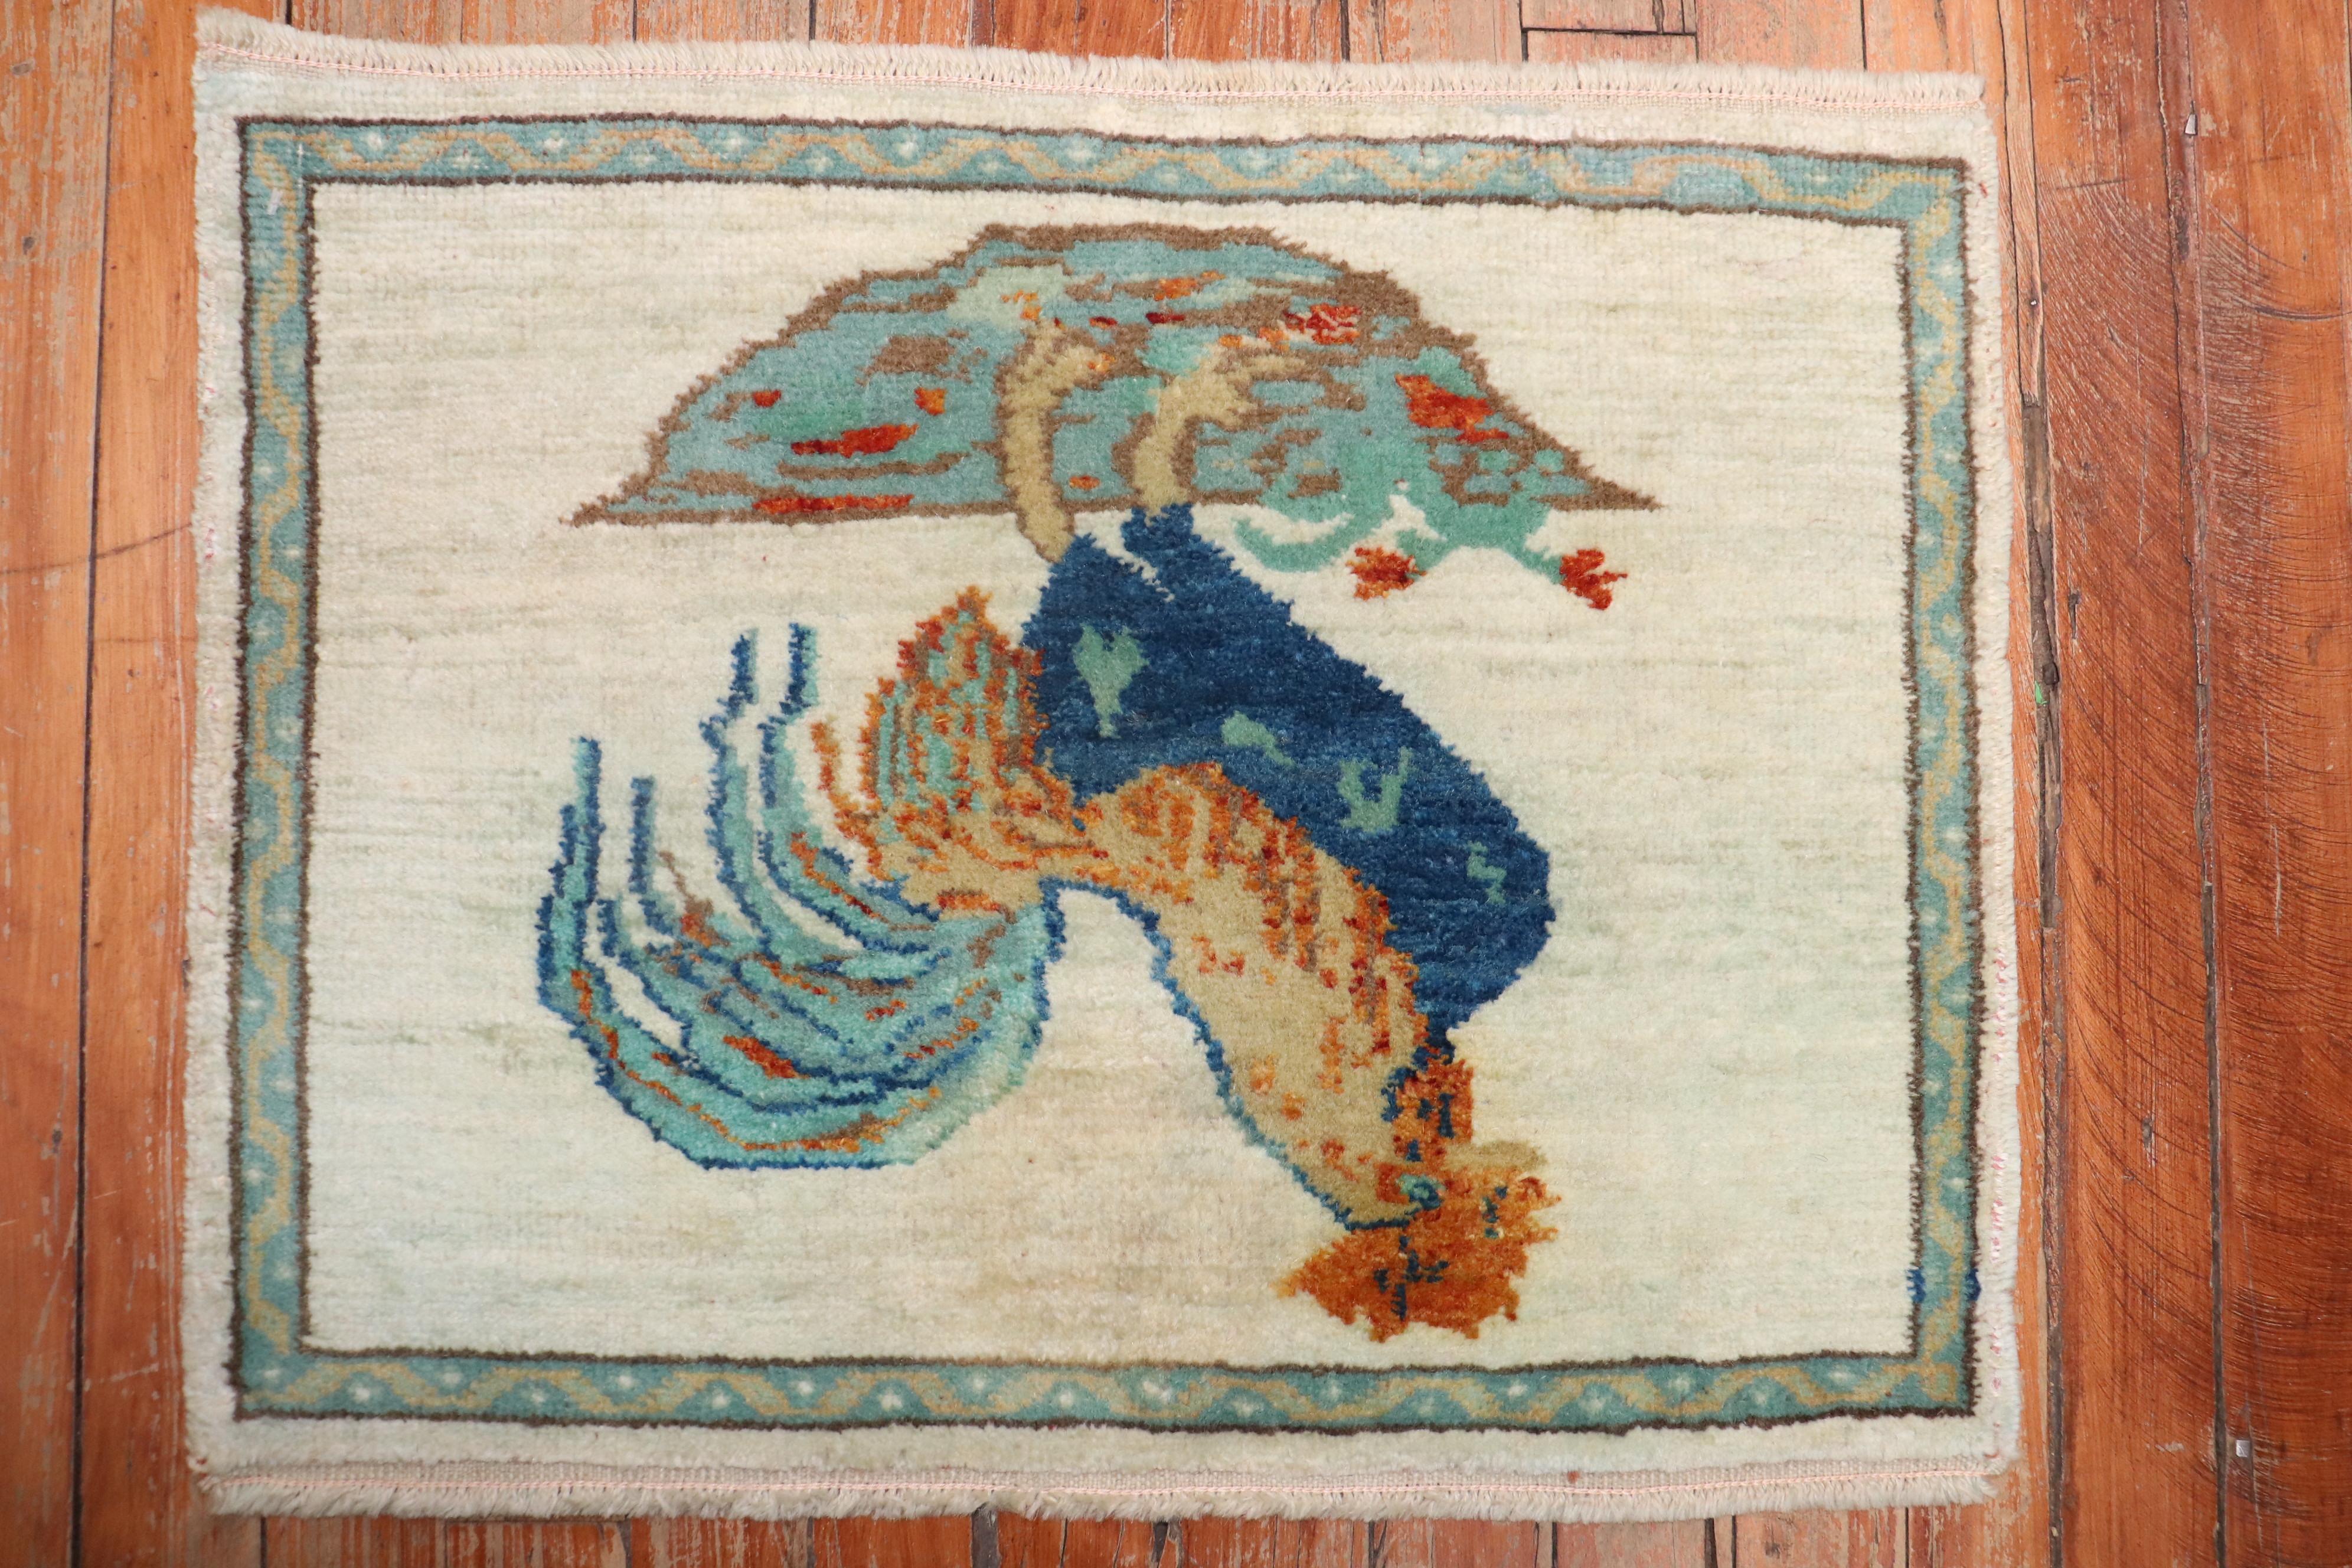 Türkischer Teppich in Mattengröße, der einen Hahn auf einem elfenbeinfarbenen Feld abbildet. 

Maße: 1'6